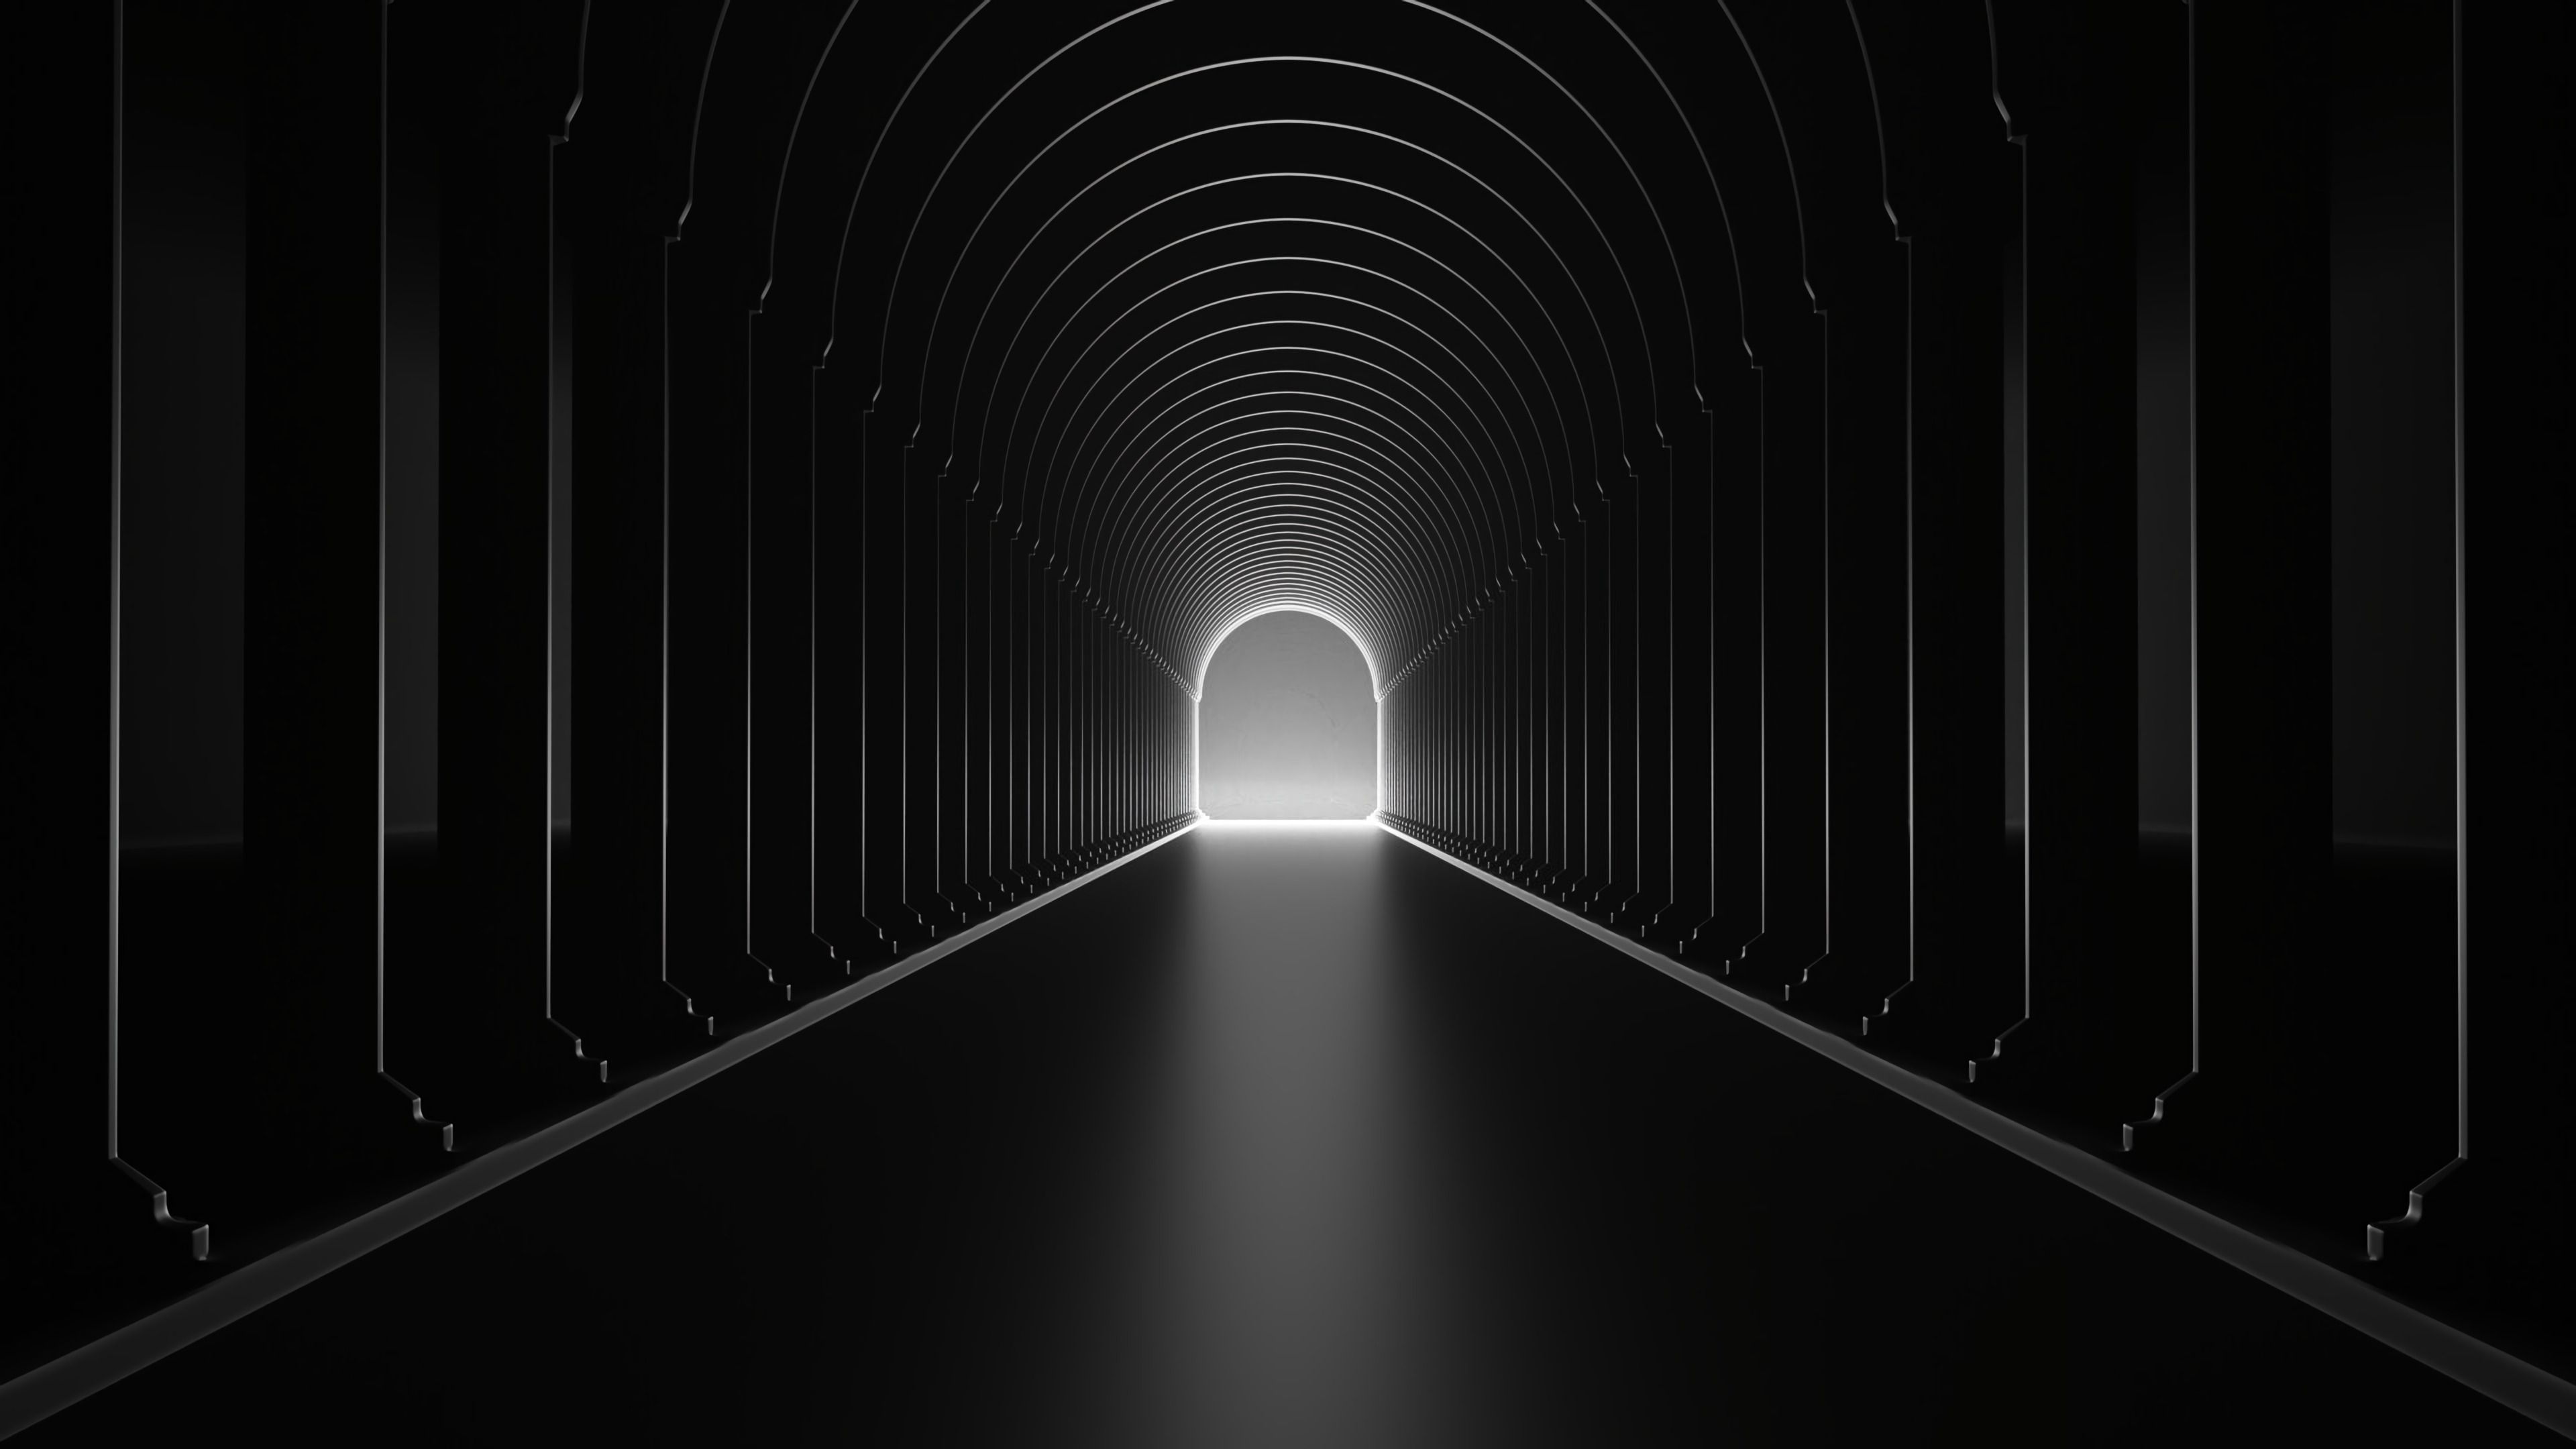 glow, black, bw, chb, dahl, distance, arch, tunnel Full HD